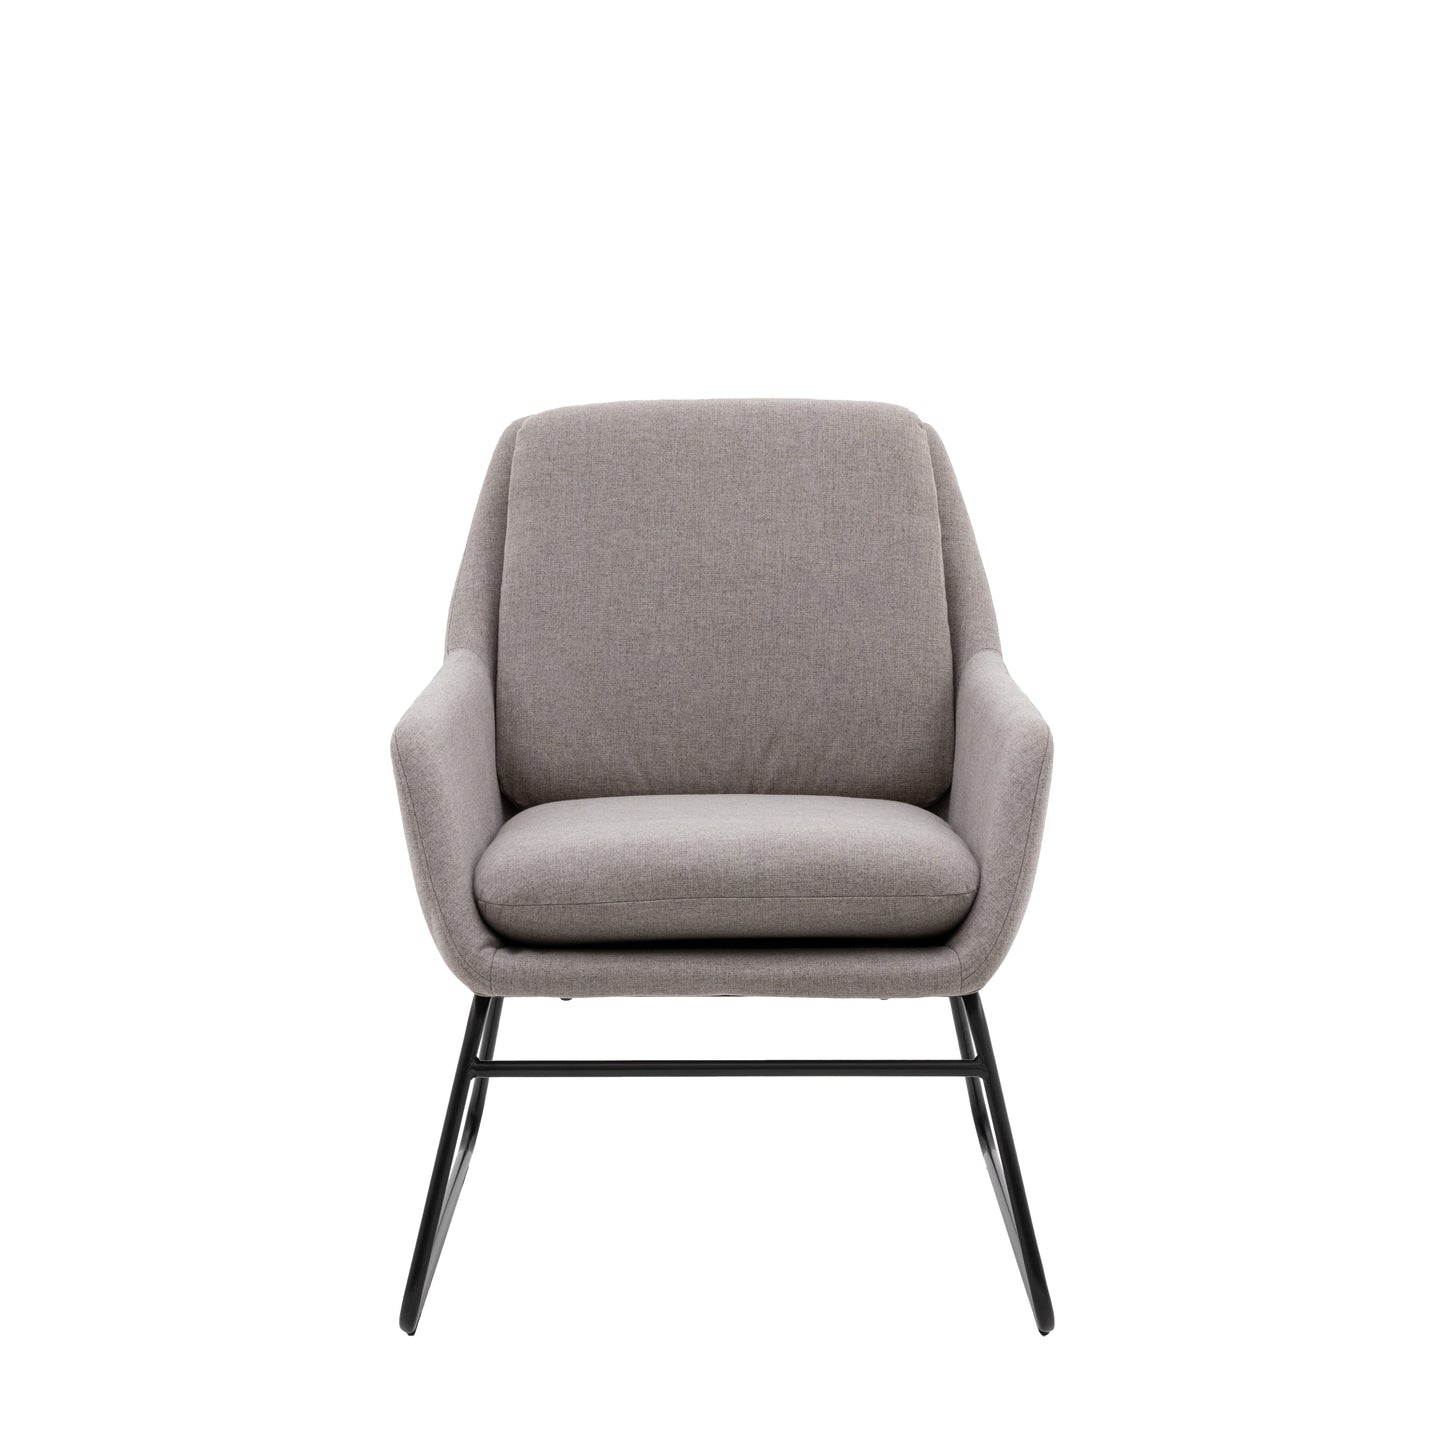 Funton Chair Light Grey 635x885x835mm